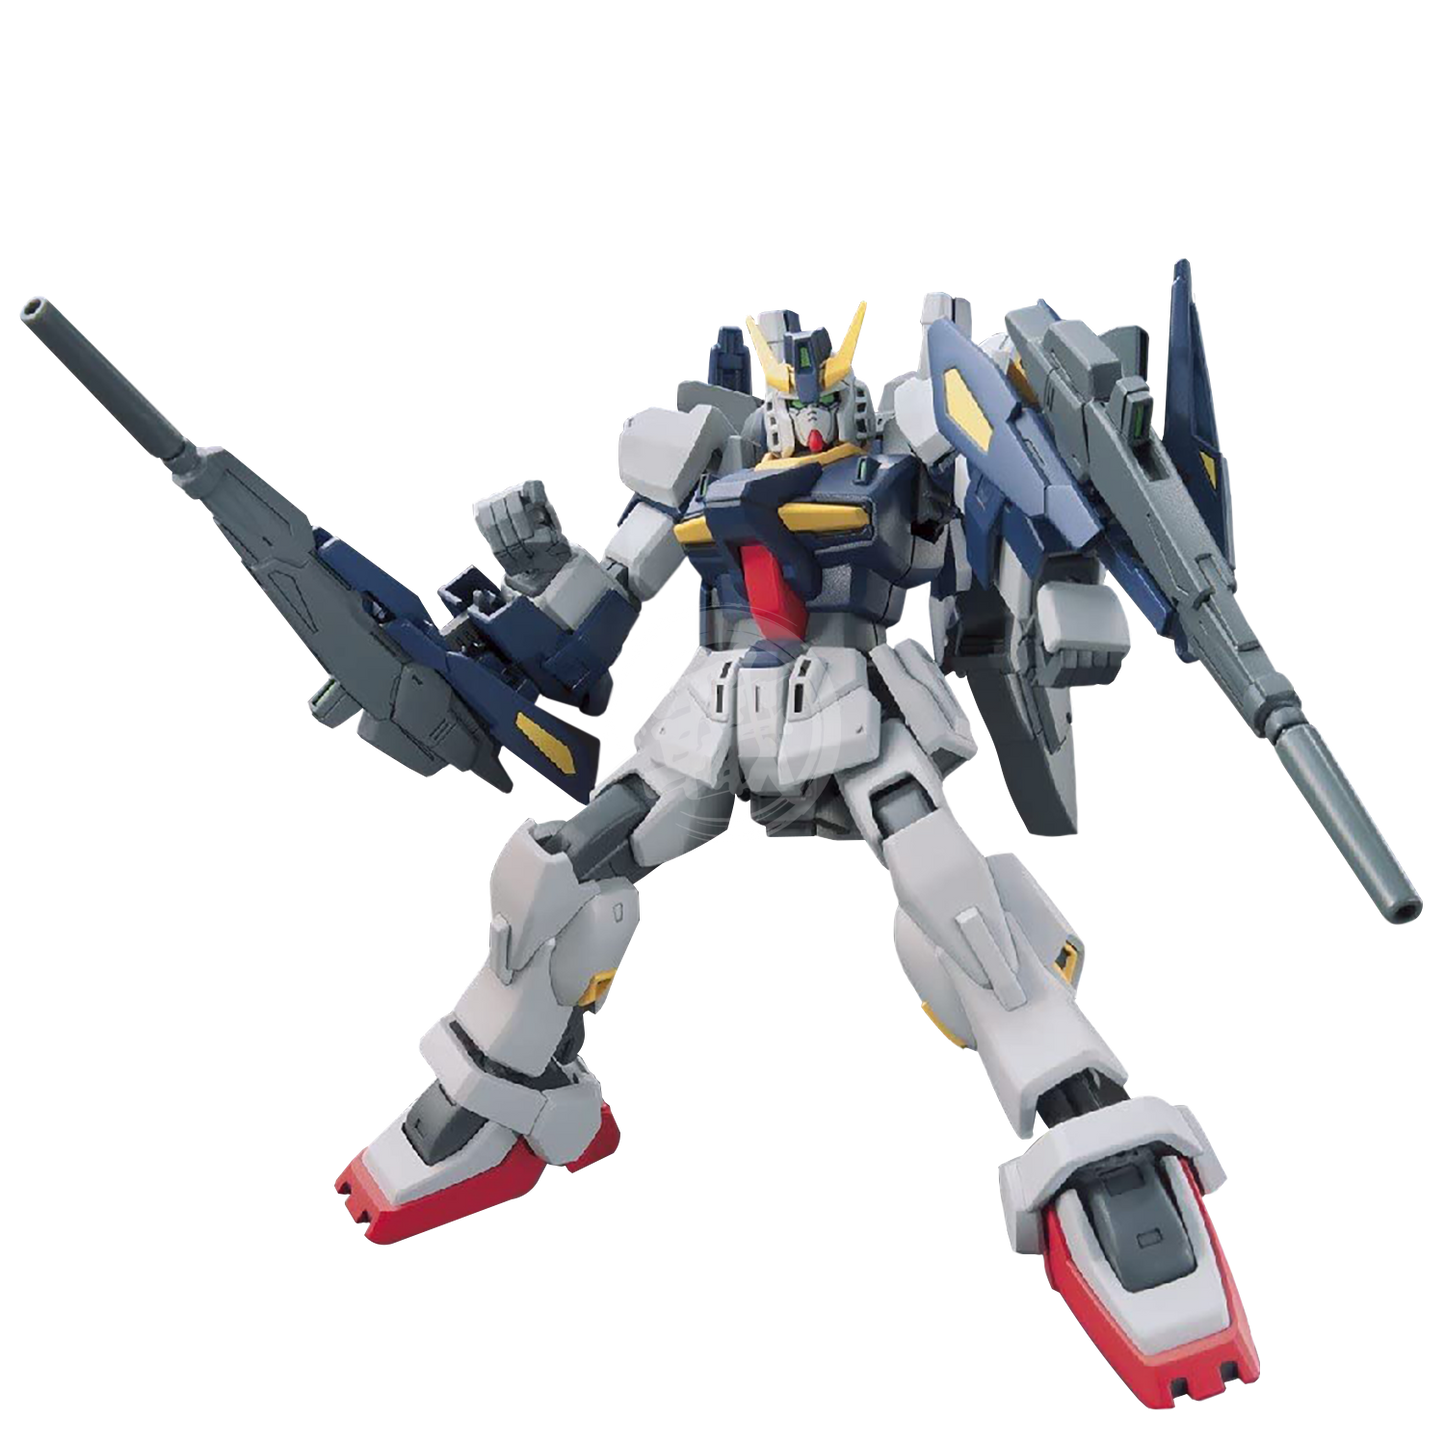 Bandai - HG Build Gundam Mk-II - ShokuninGunpla